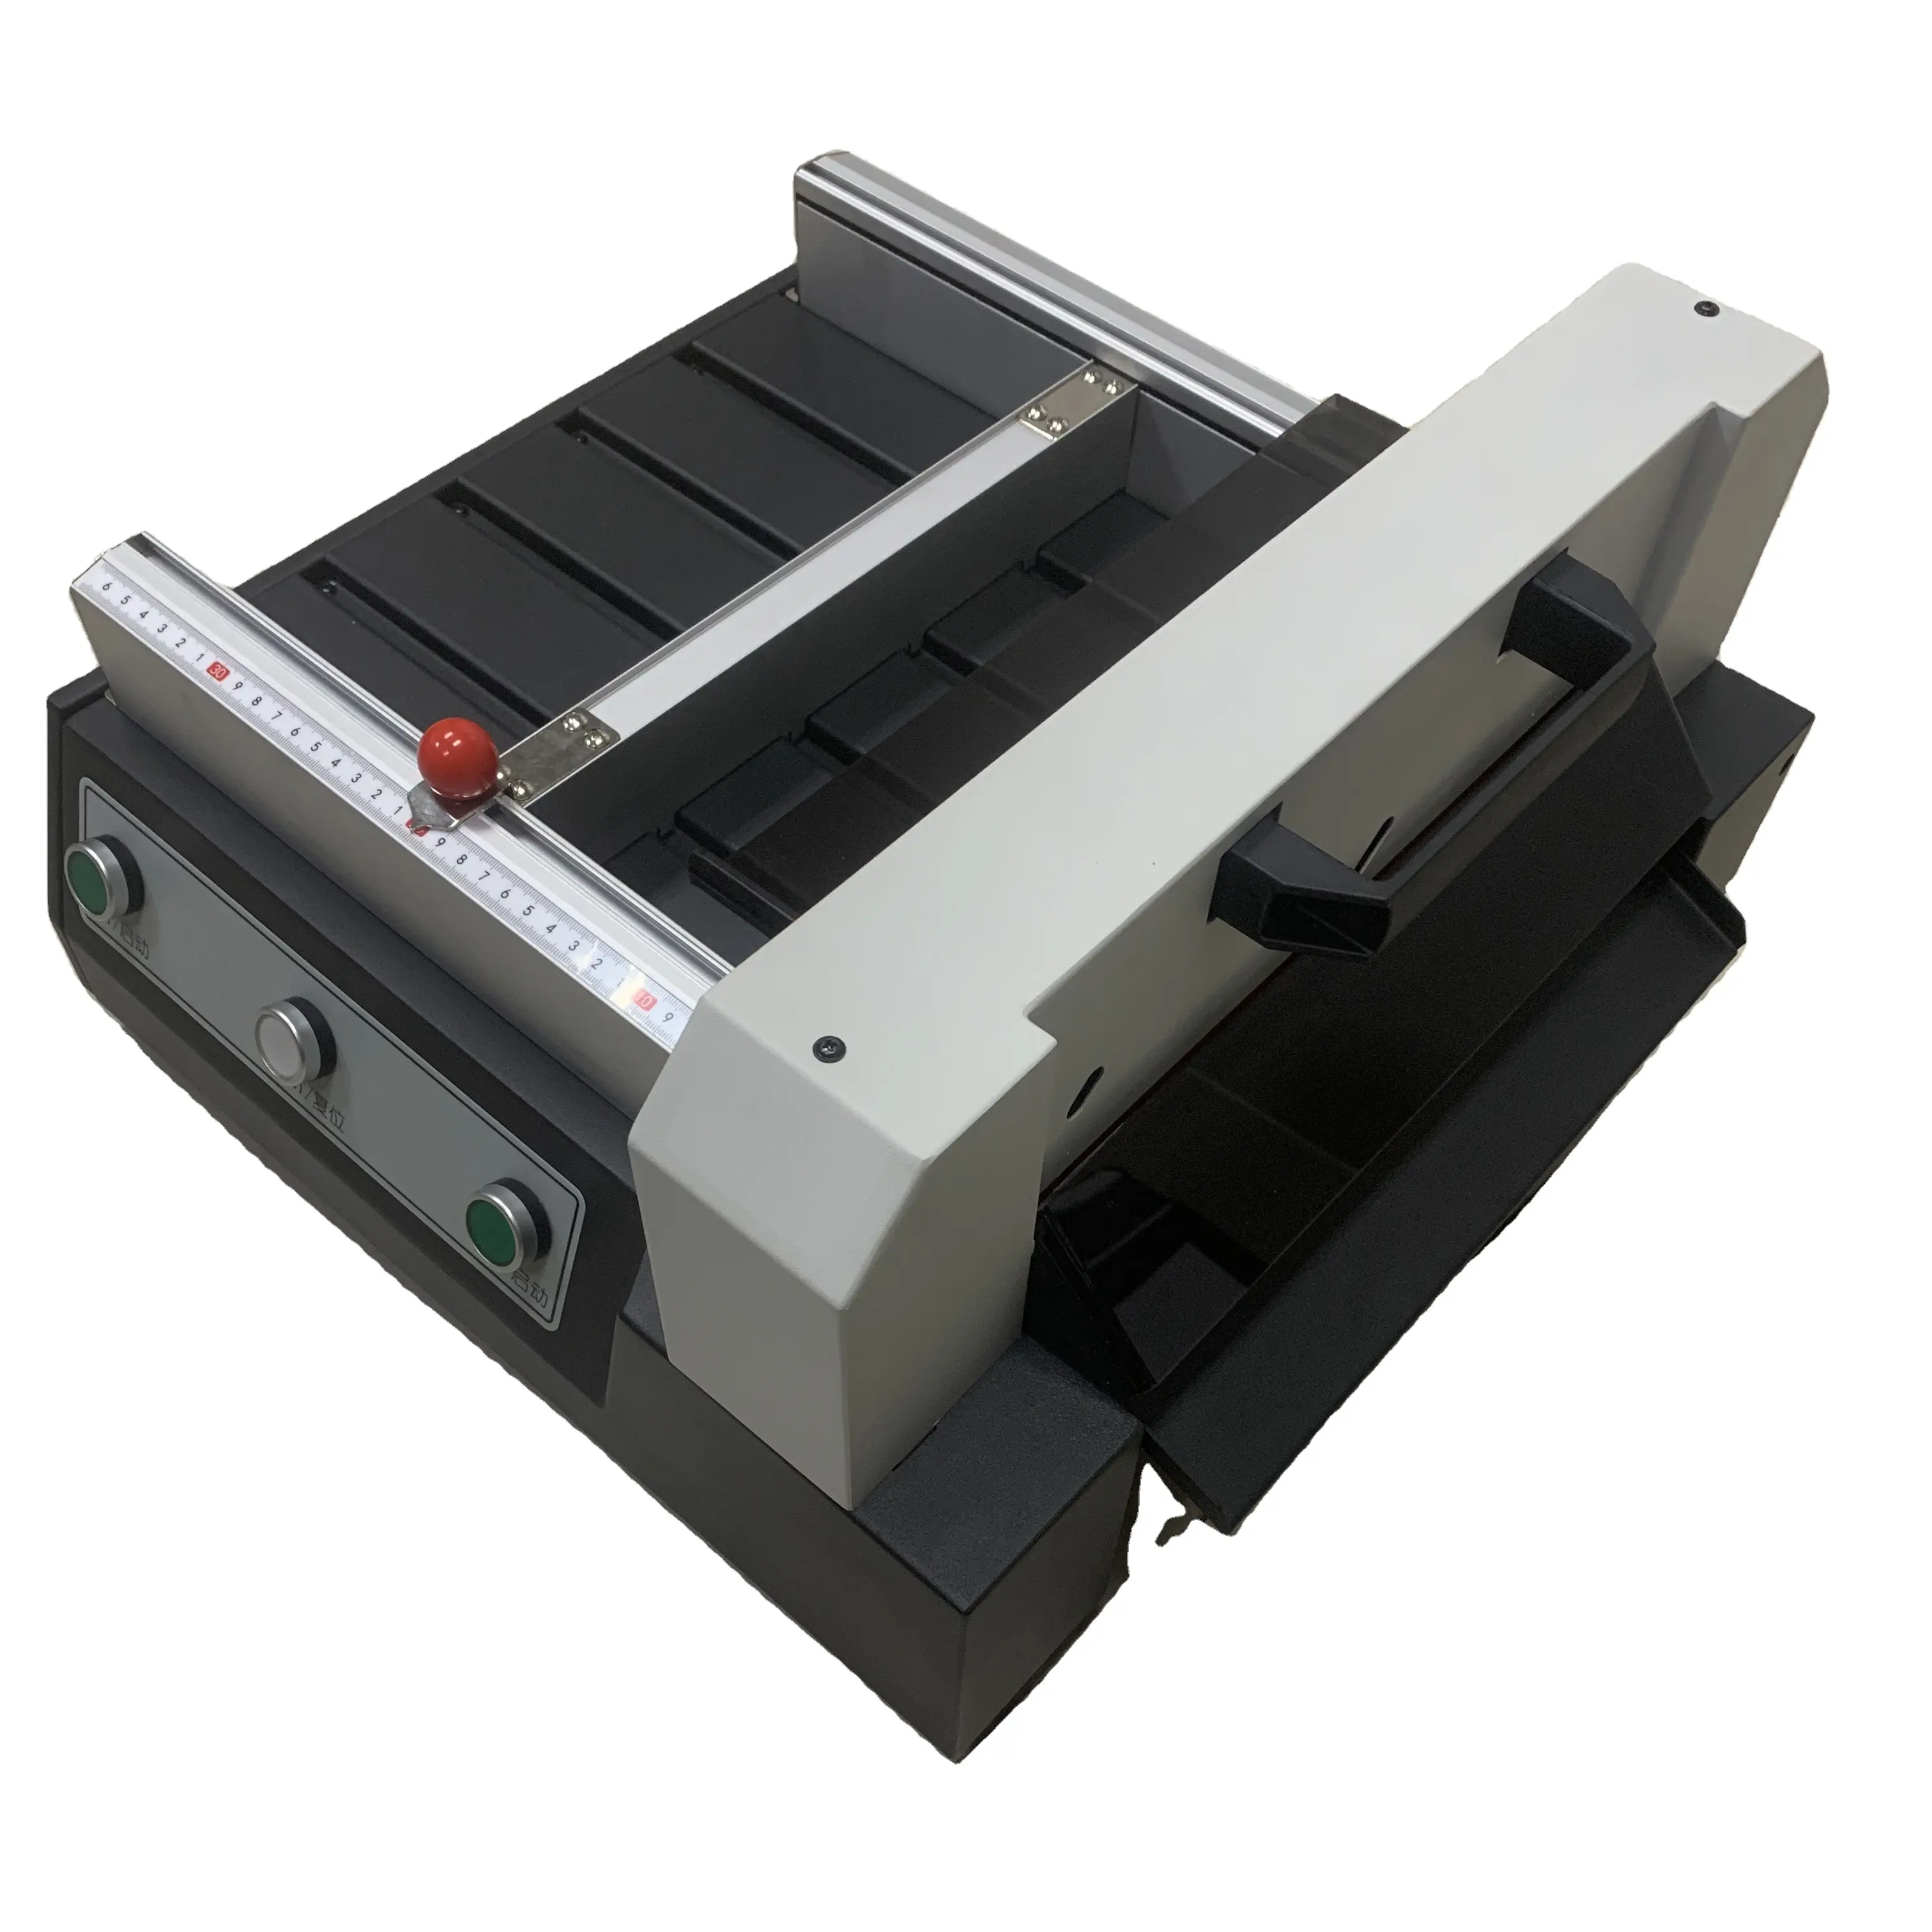 electric guillotine paper cutter a4 paper cutting machine